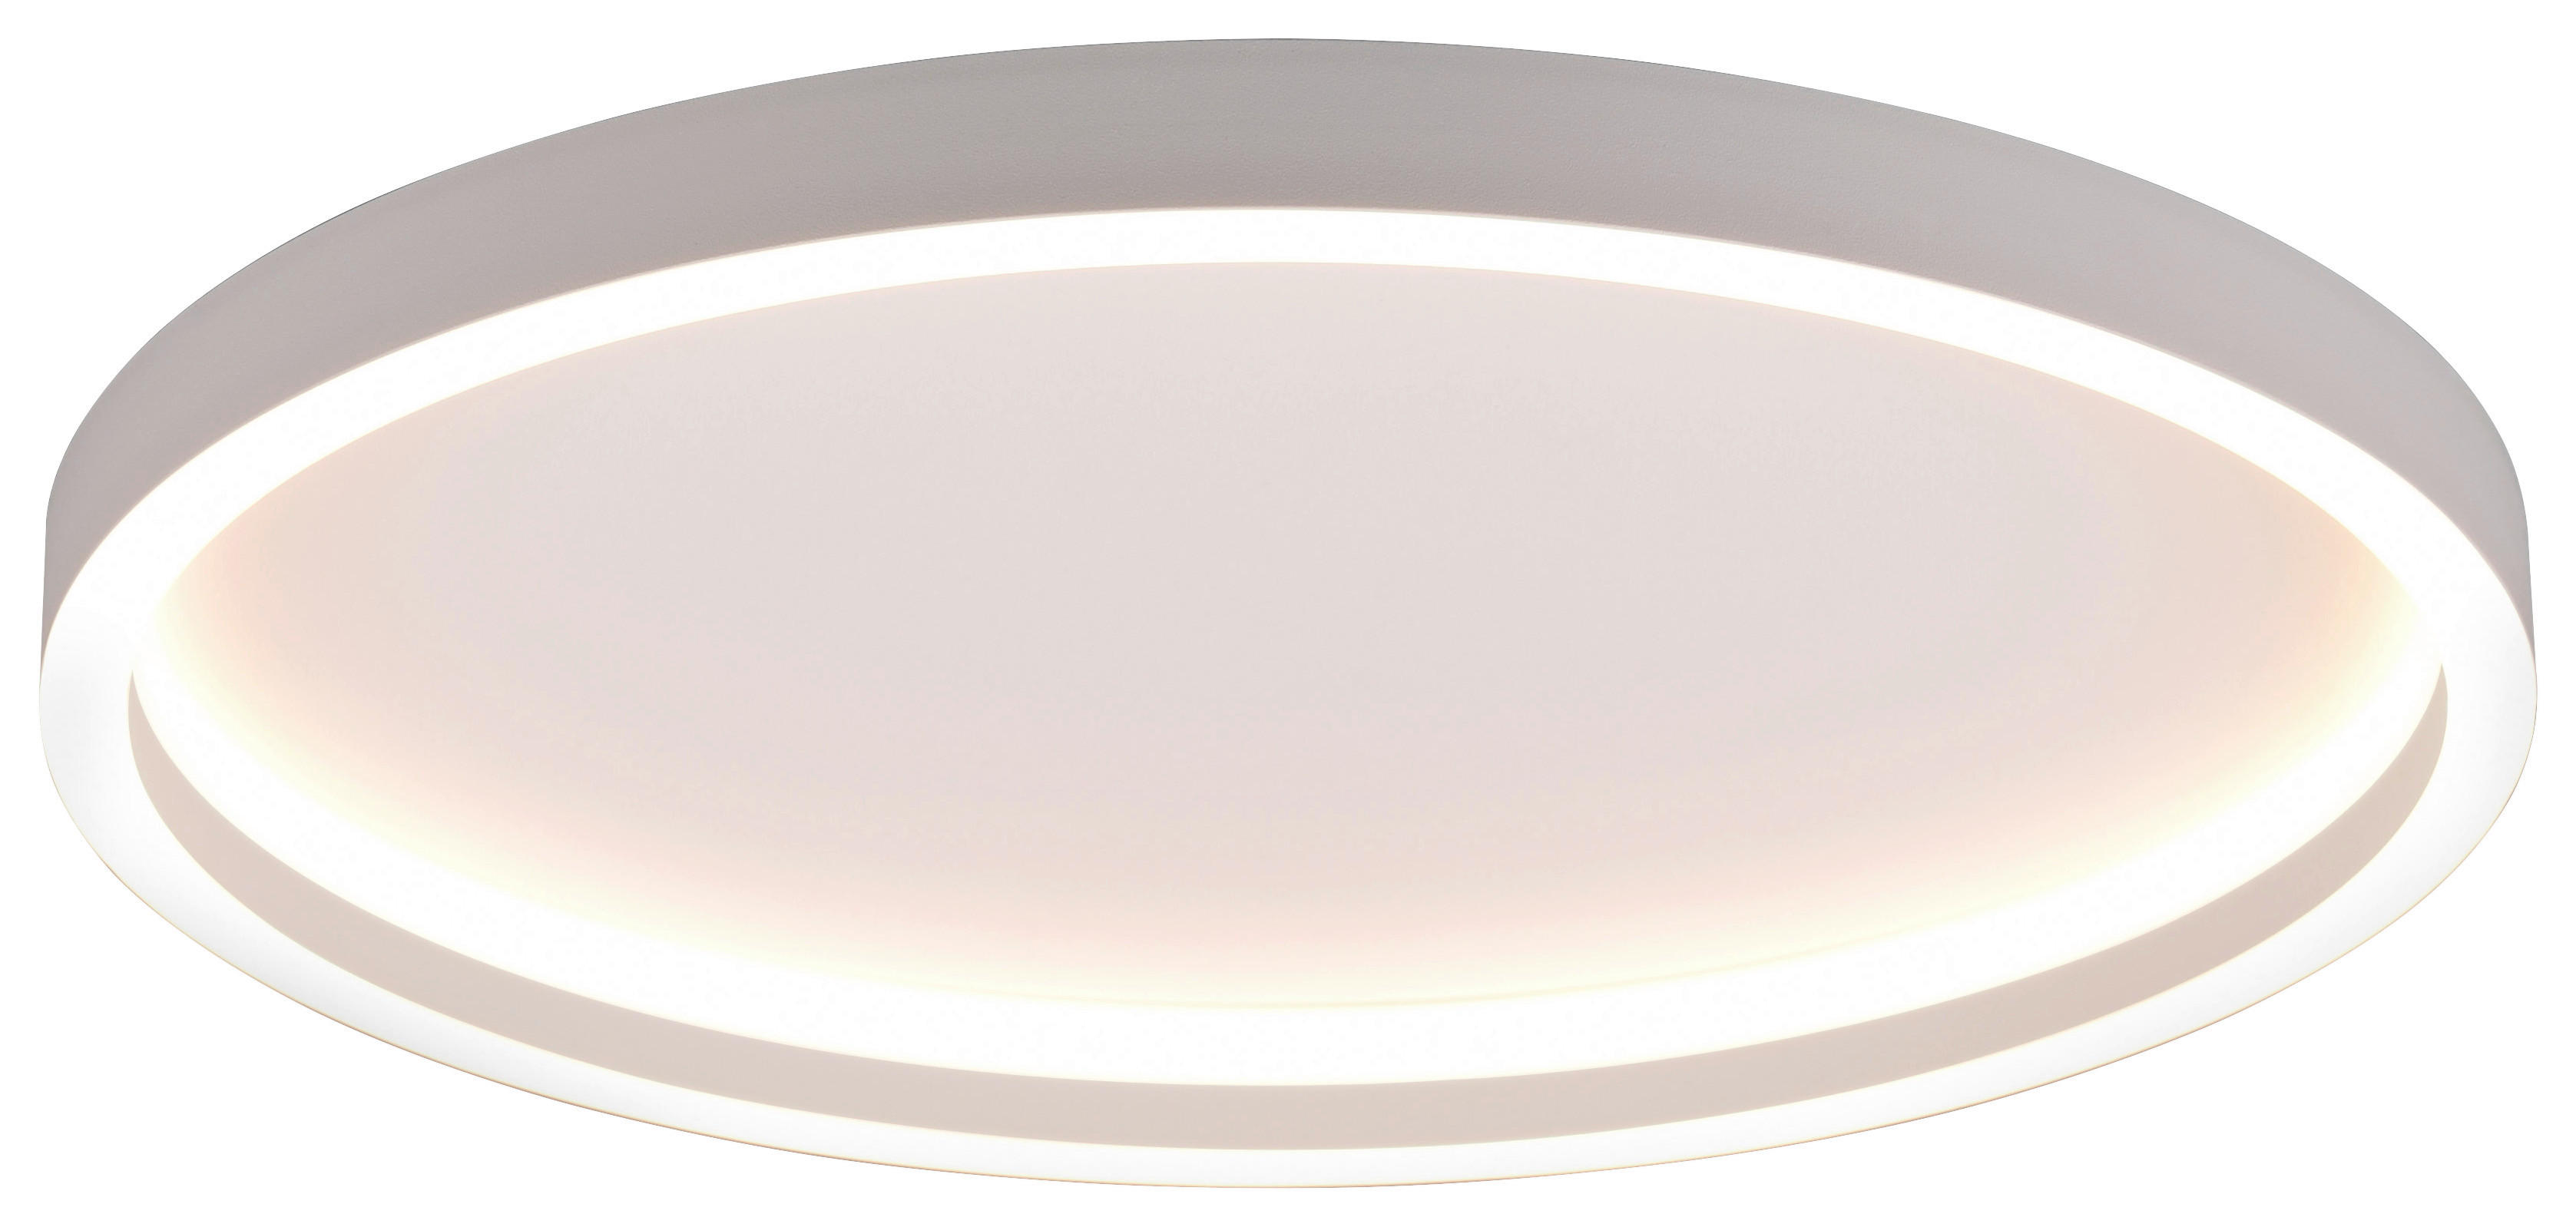 USB-Lichter bei Nacht, Mini-LED-Lampe, ohne Lichtsensor, Stecker, warmweiß,  kompakt, ideal für Schlafzimmer, Badezimmer, Küche, Auto, USB-Atmosphäre- Licht (12 Stück, 4 Weiß + 4 Warm + 4 Farbe) : : Beleuchtung